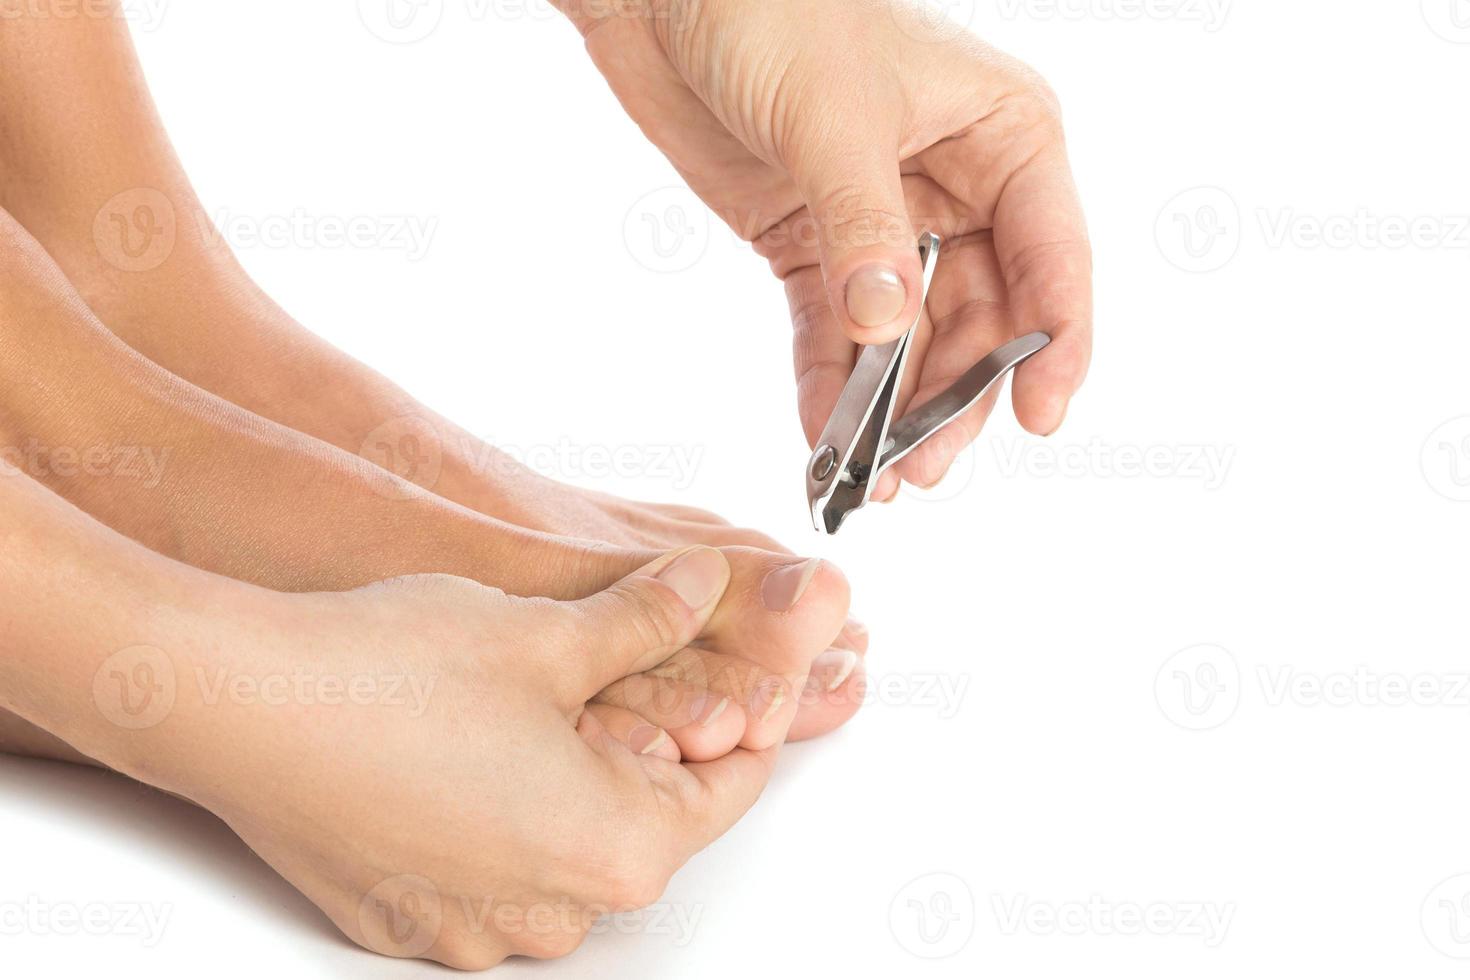 detailopname van vrouw voeten en nagel tondeuse foto